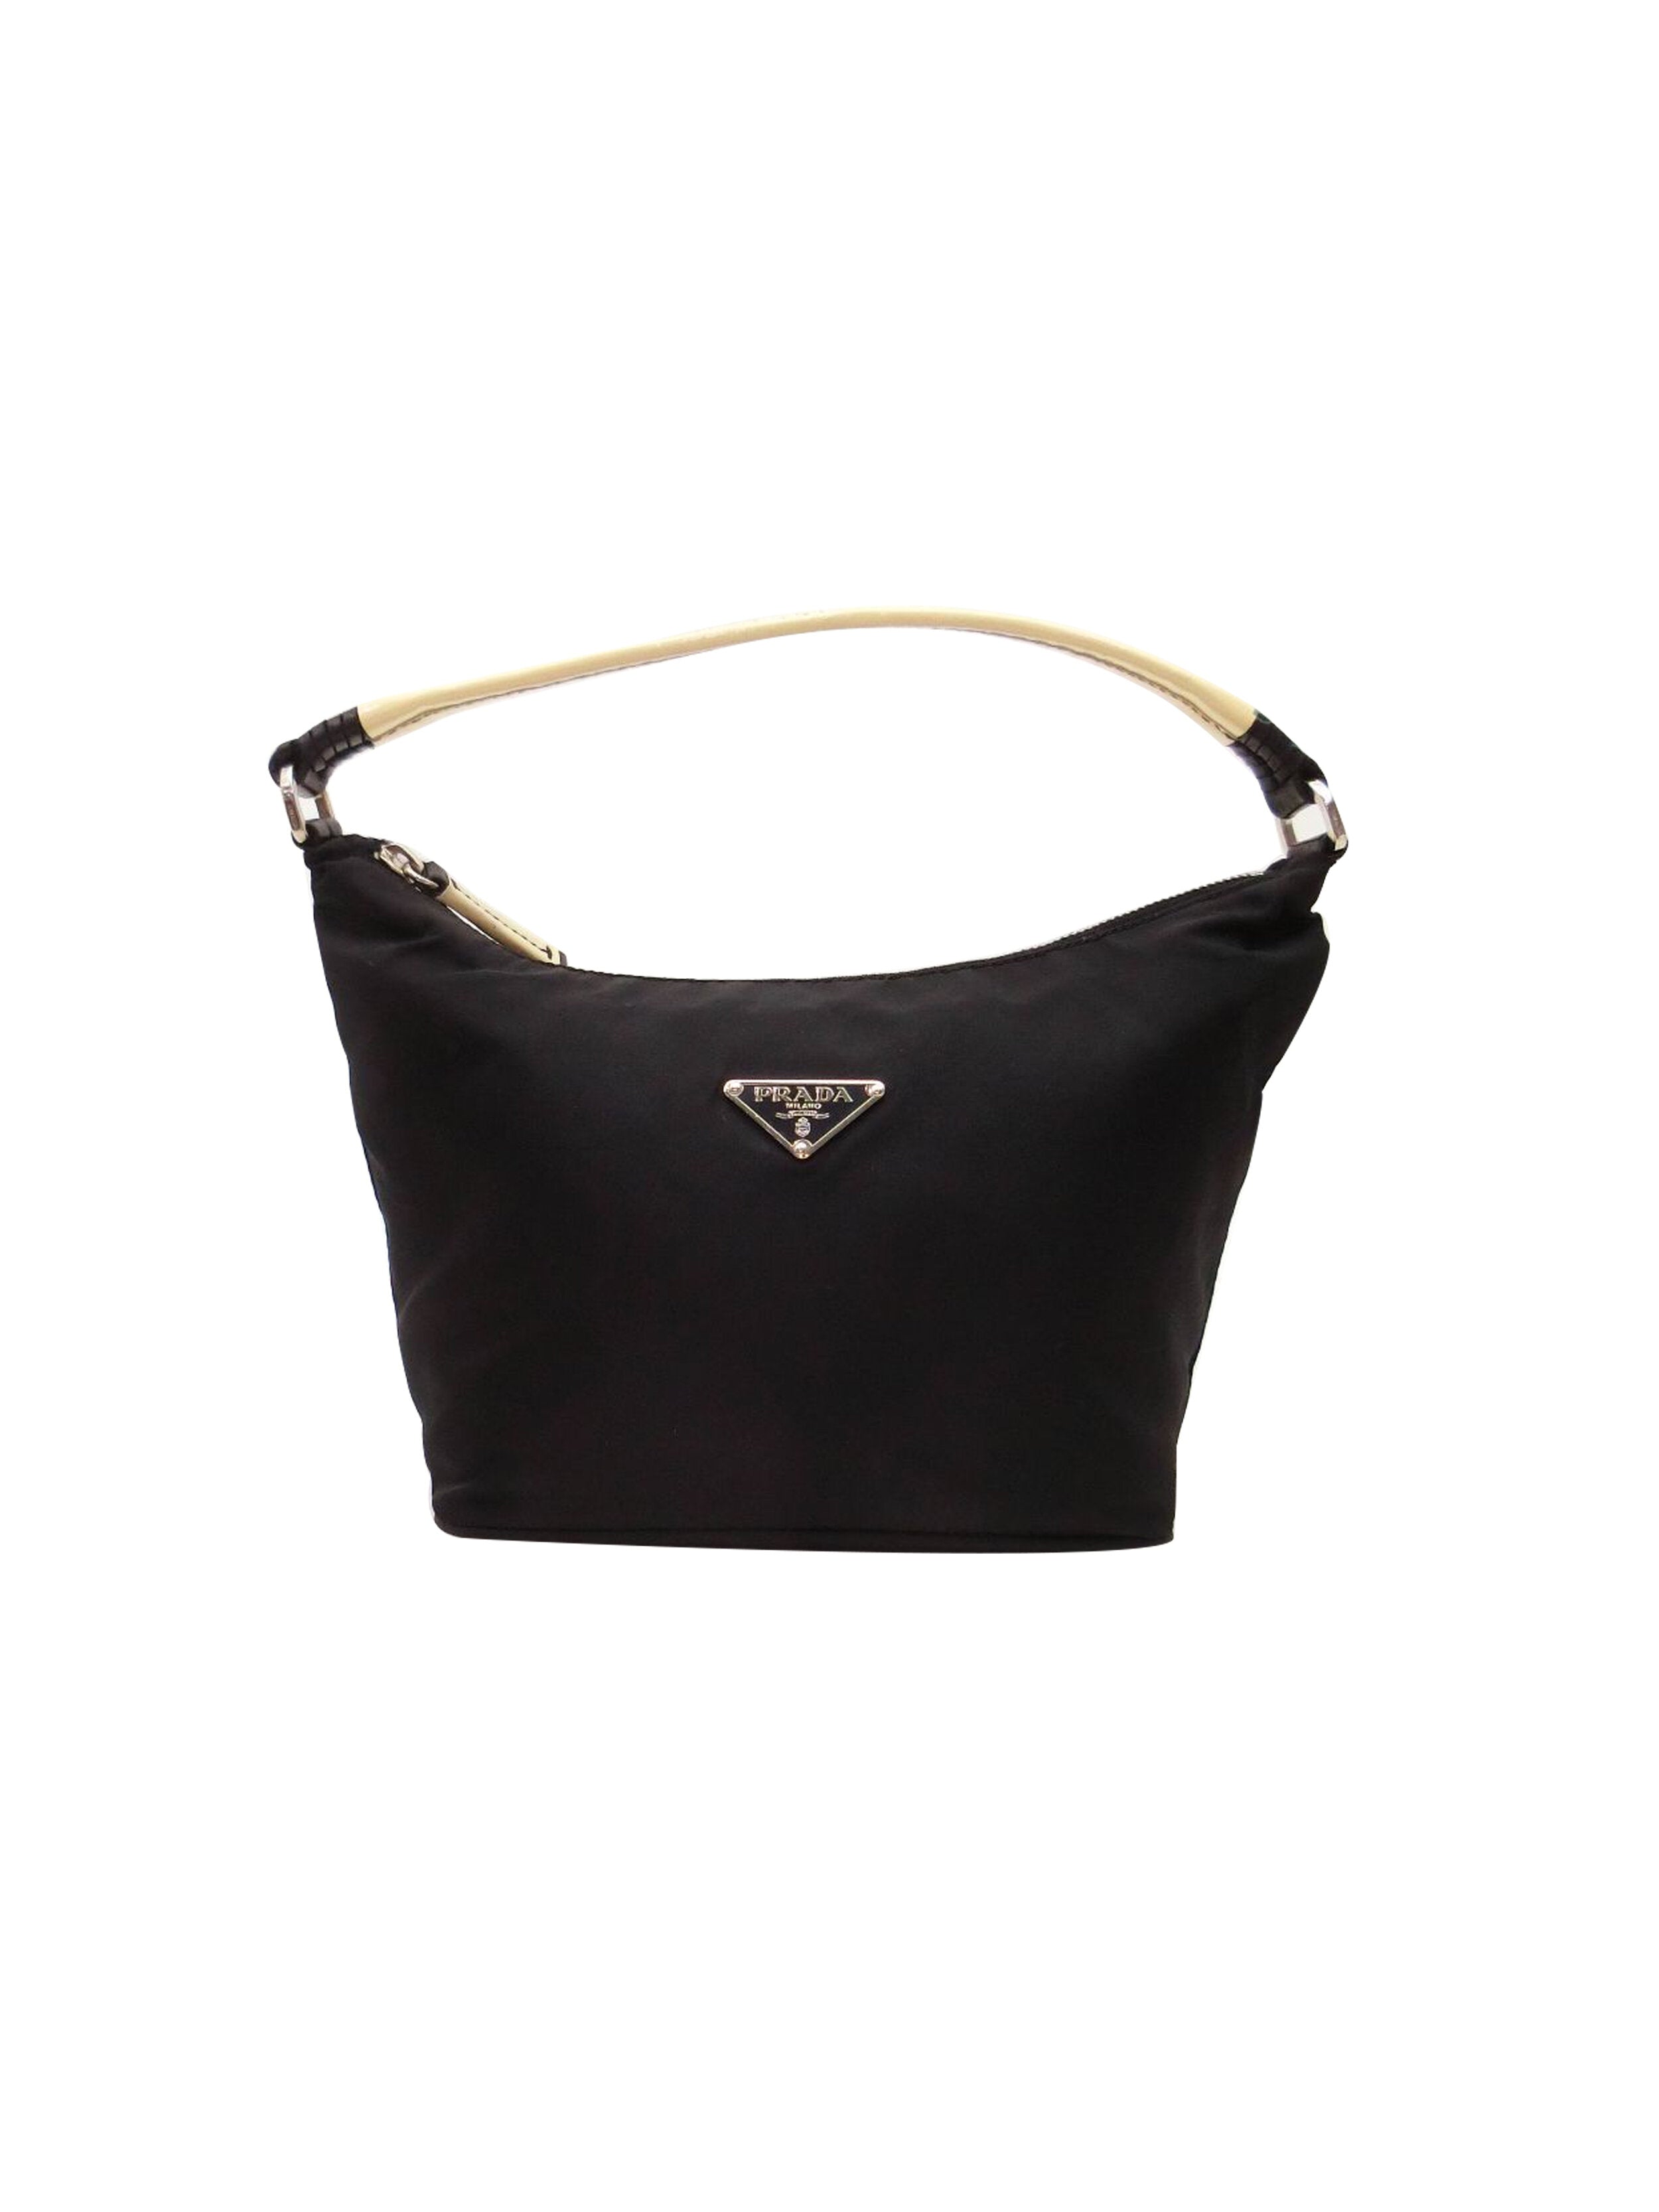 Prada 2000s Black Nylon Mini Handbag · INTO